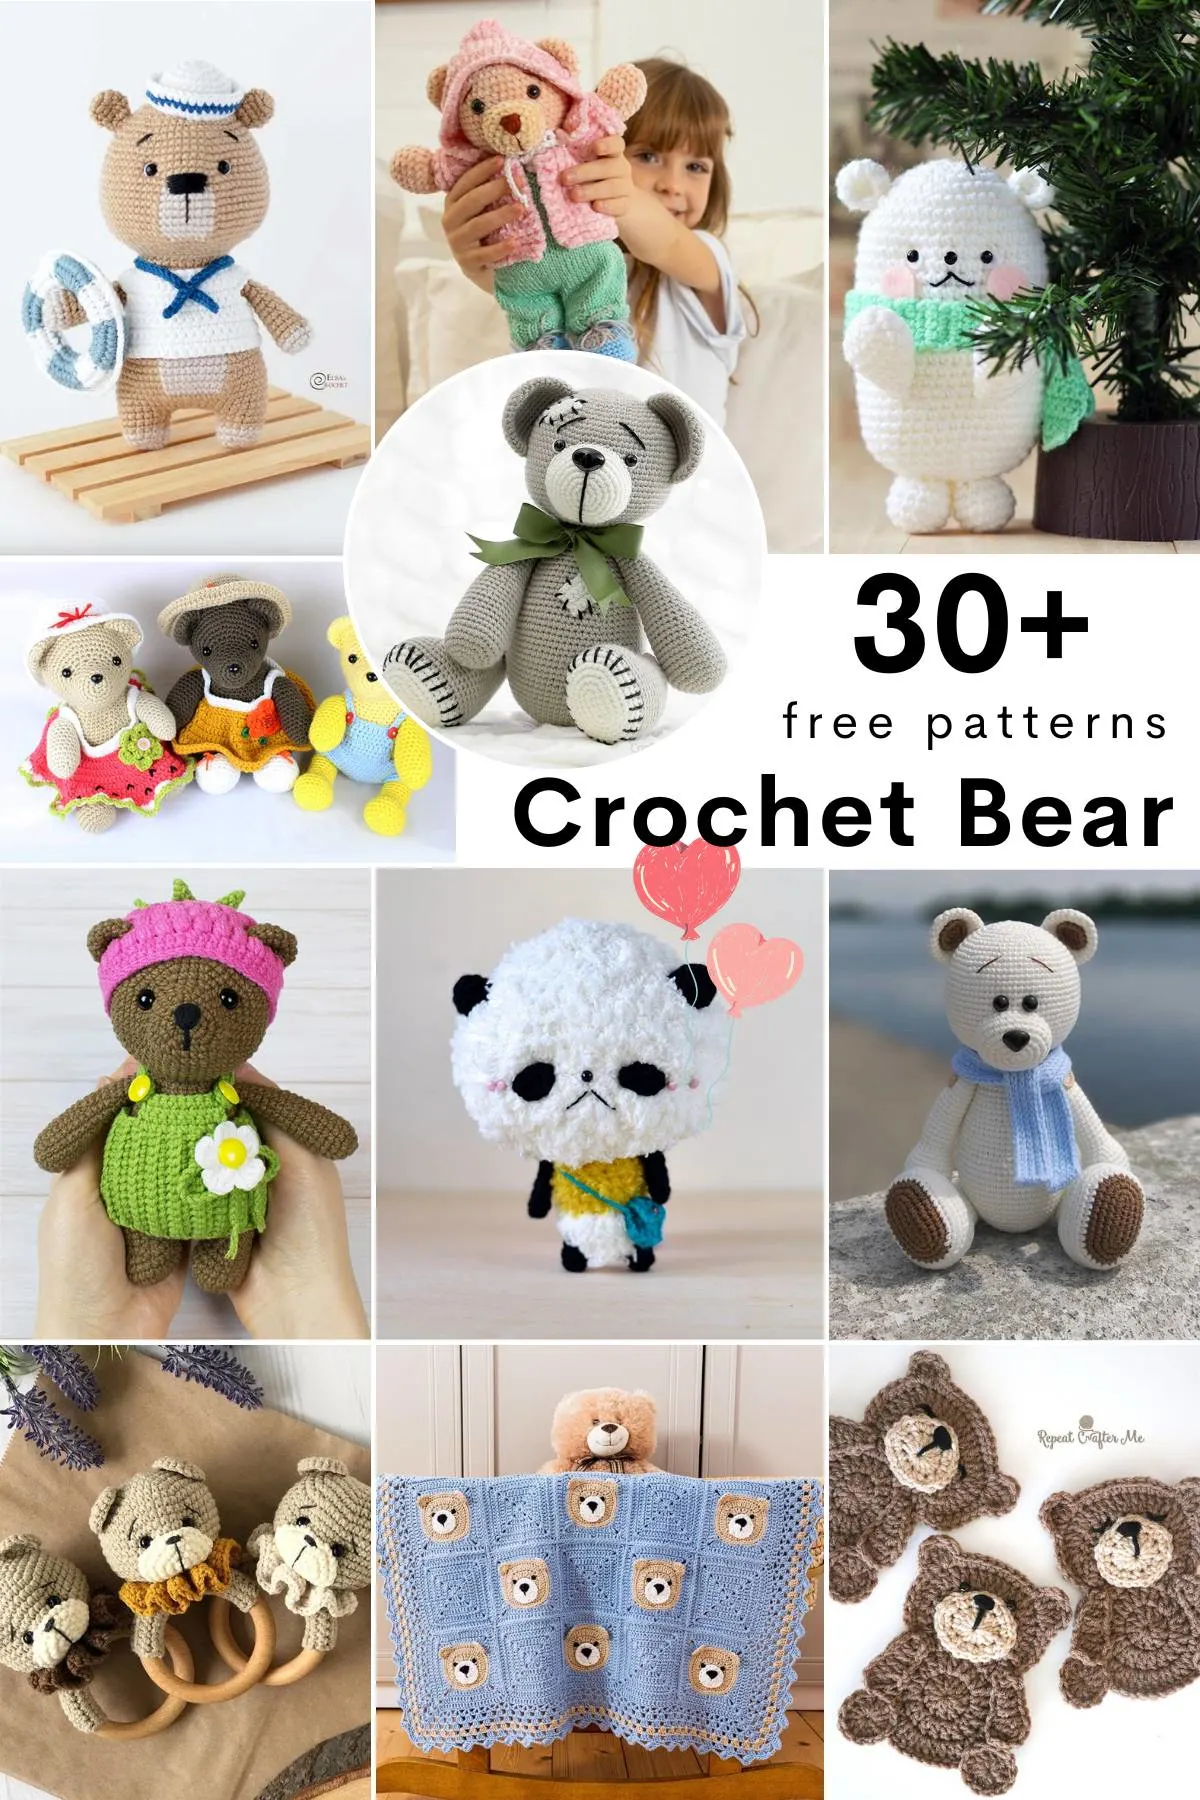 12 Memory Bears ideas  bear patterns sewing, bear patterns free, bear  patterns free sewing